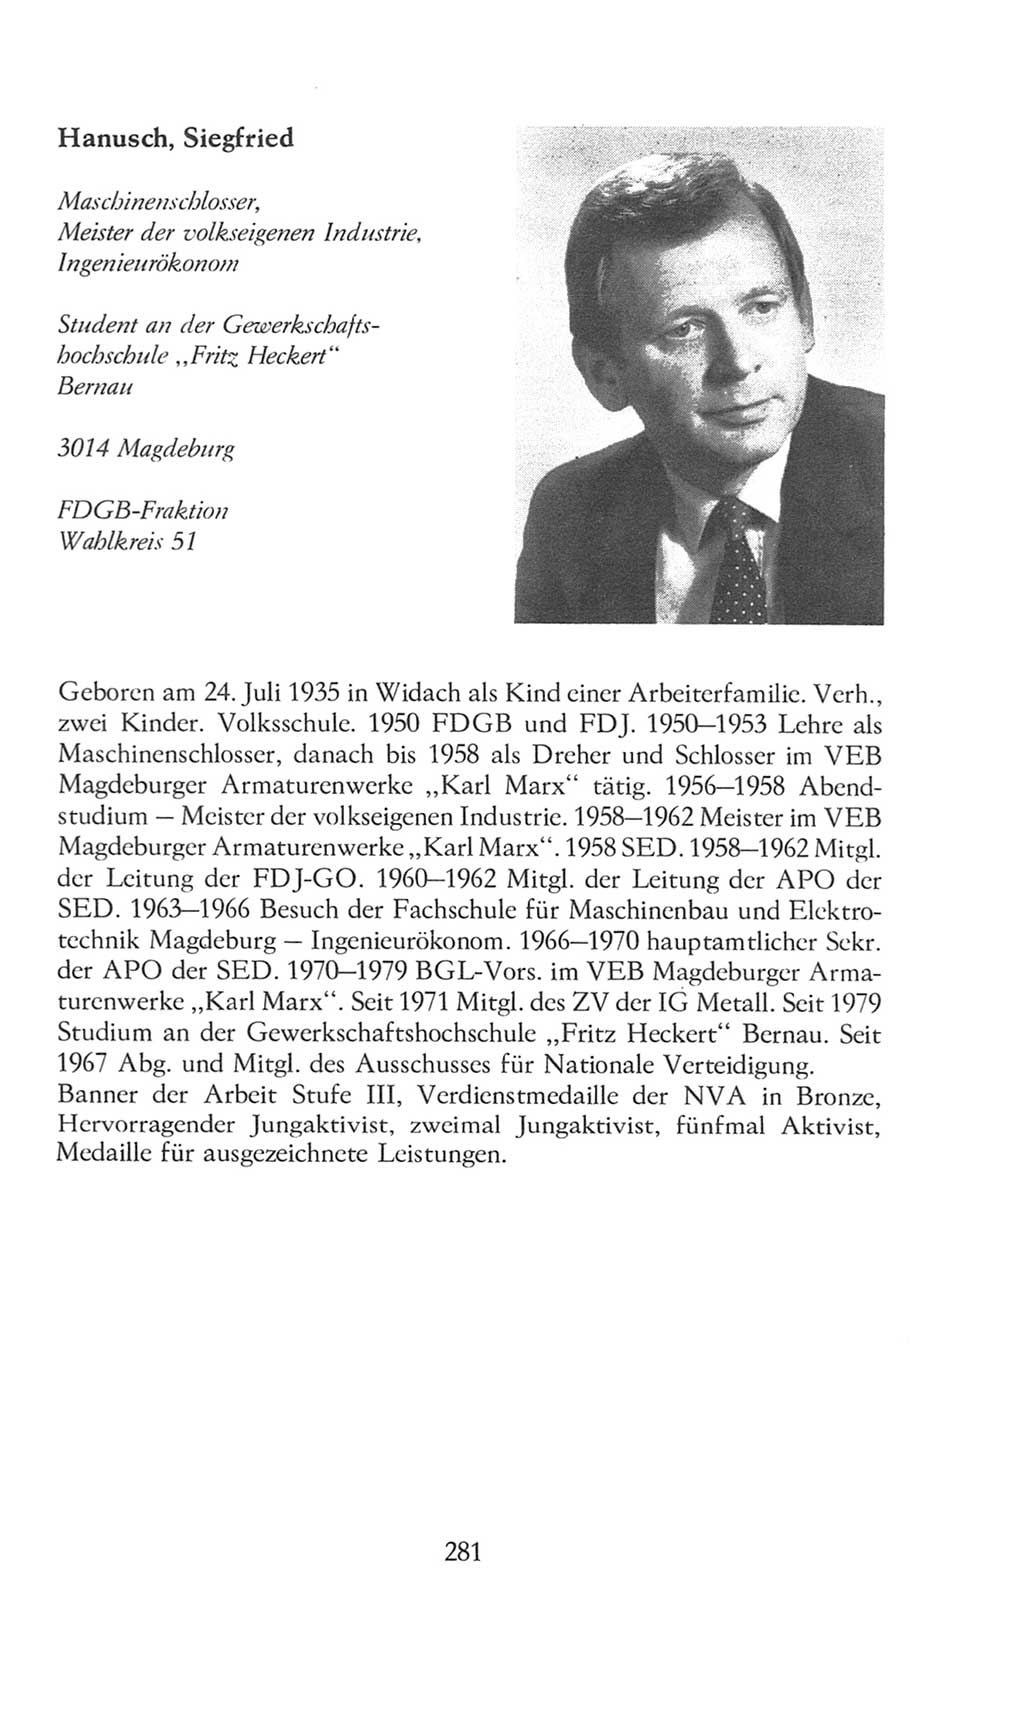 Volkskammer (VK) der Deutschen Demokratischen Republik (DDR), 8. Wahlperiode 1981-1986, Seite 281 (VK. DDR 8. WP. 1981-1986, S. 281)